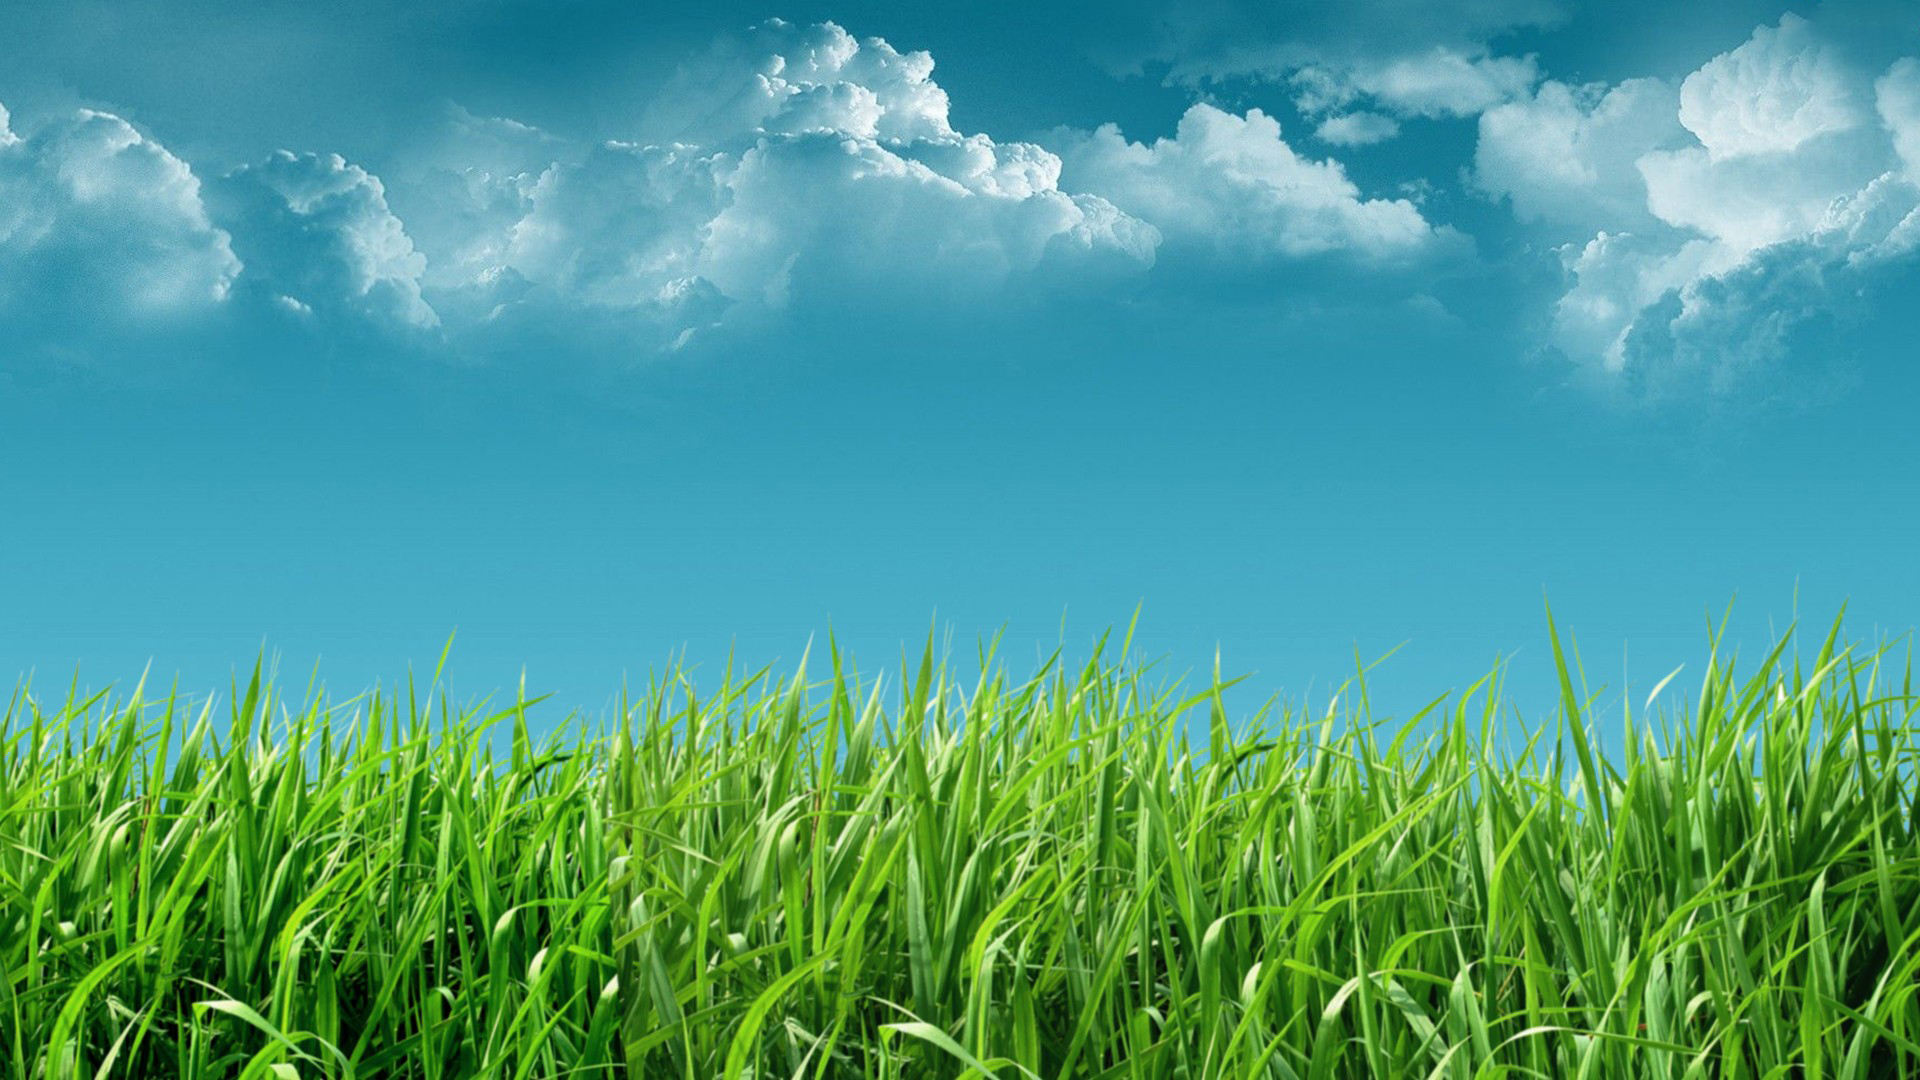 Hình nền mây và cỏ xanh